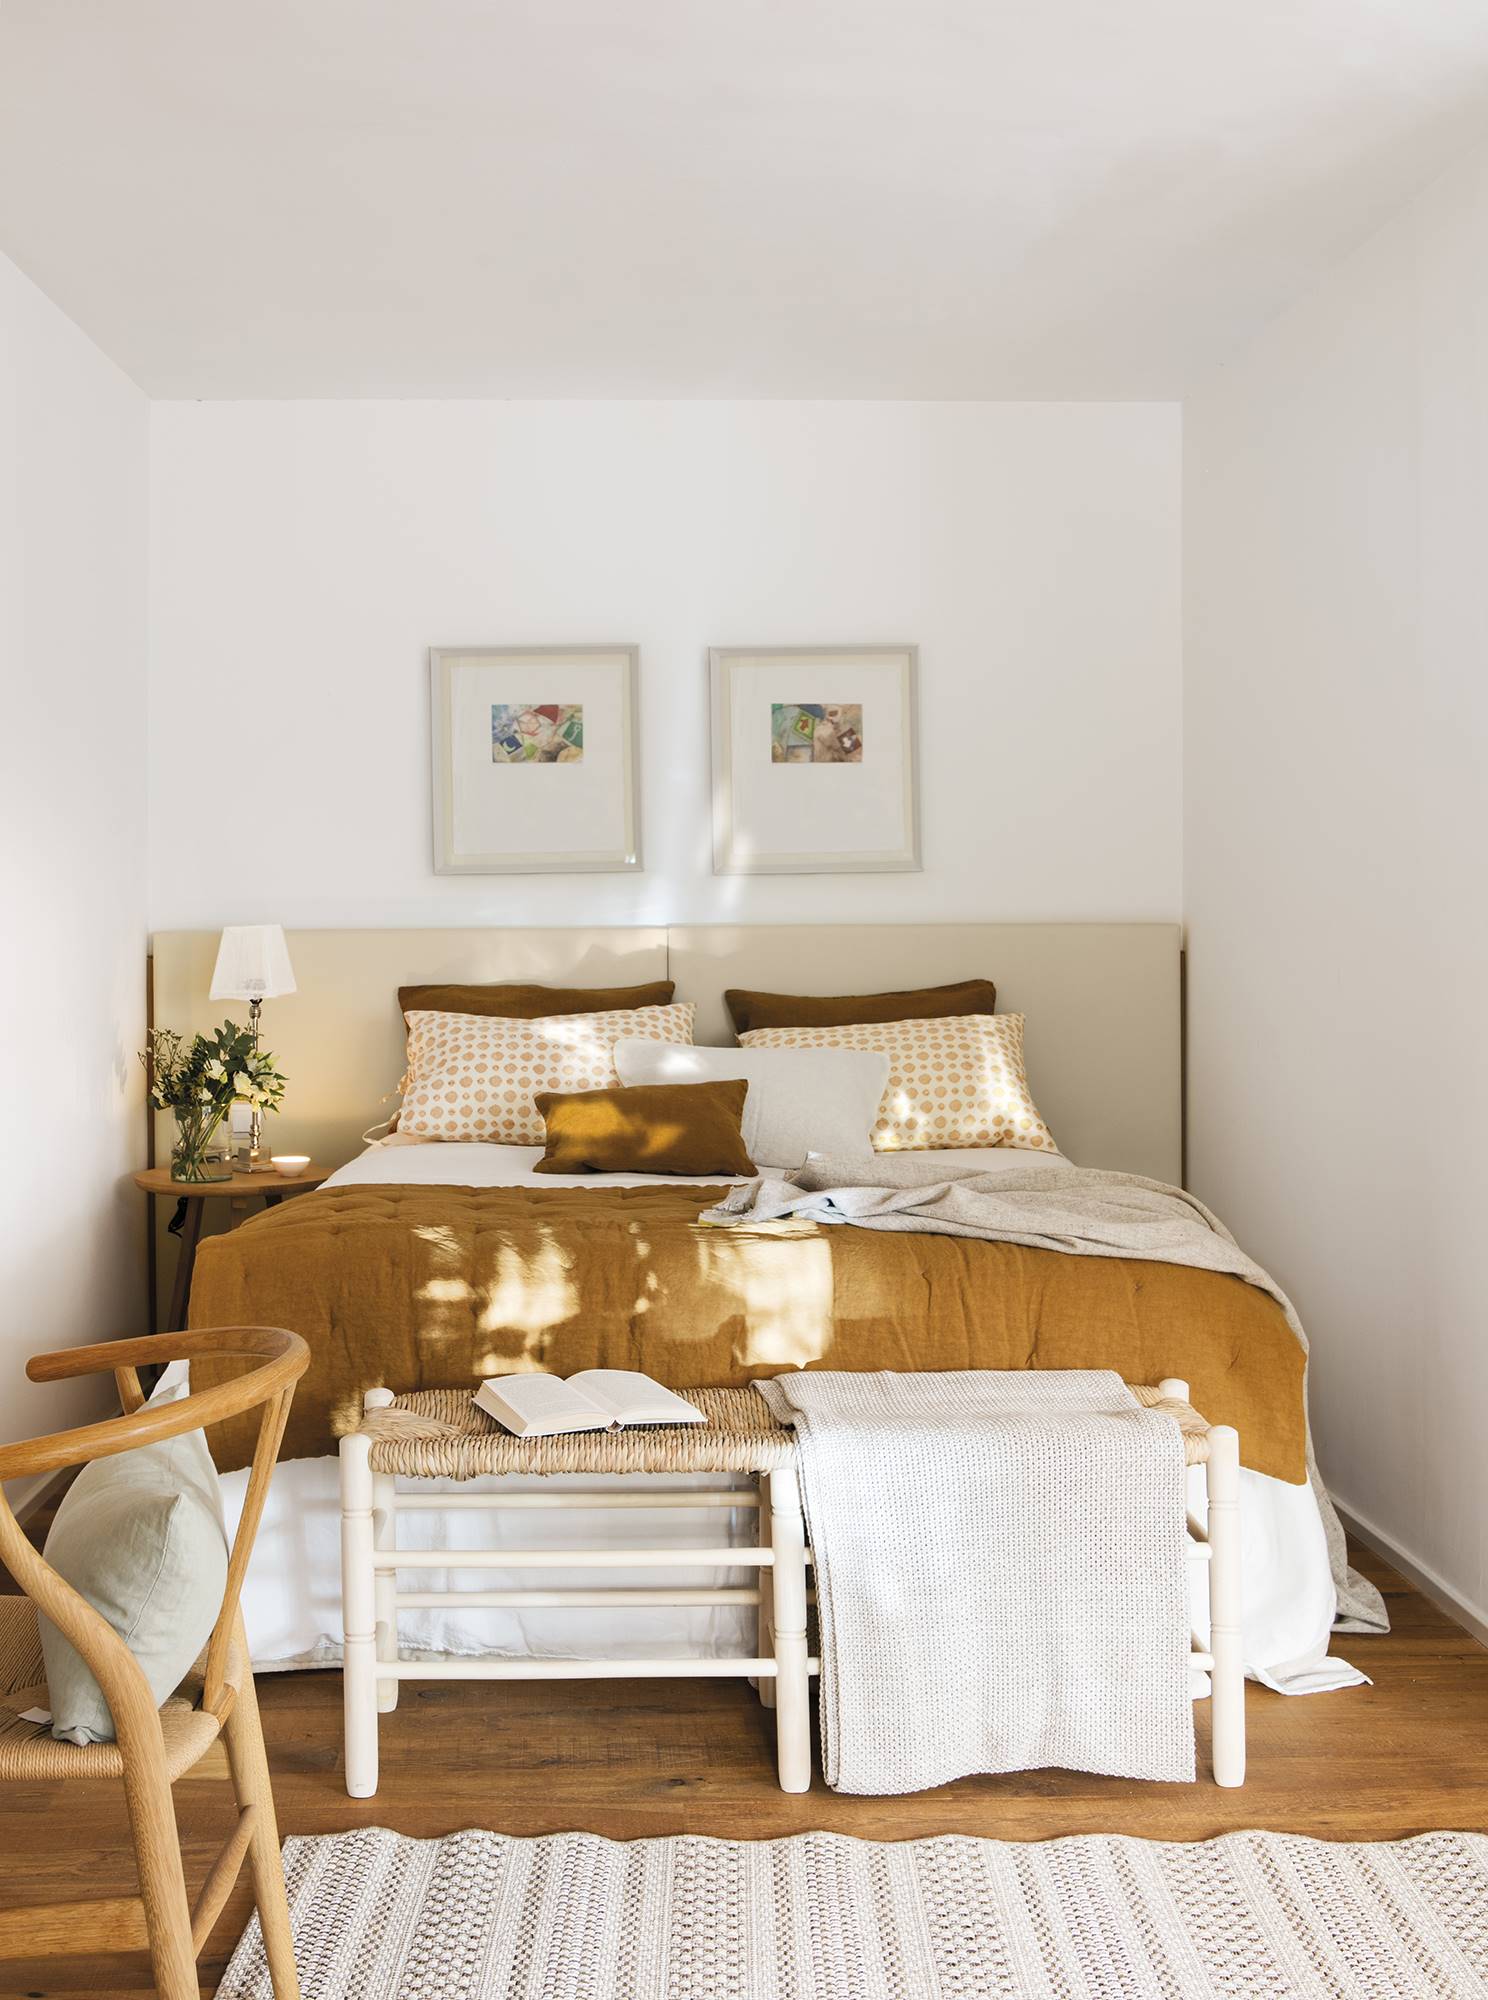 Dormitorio abierto con tocador decorado en tonos beiges y ocres